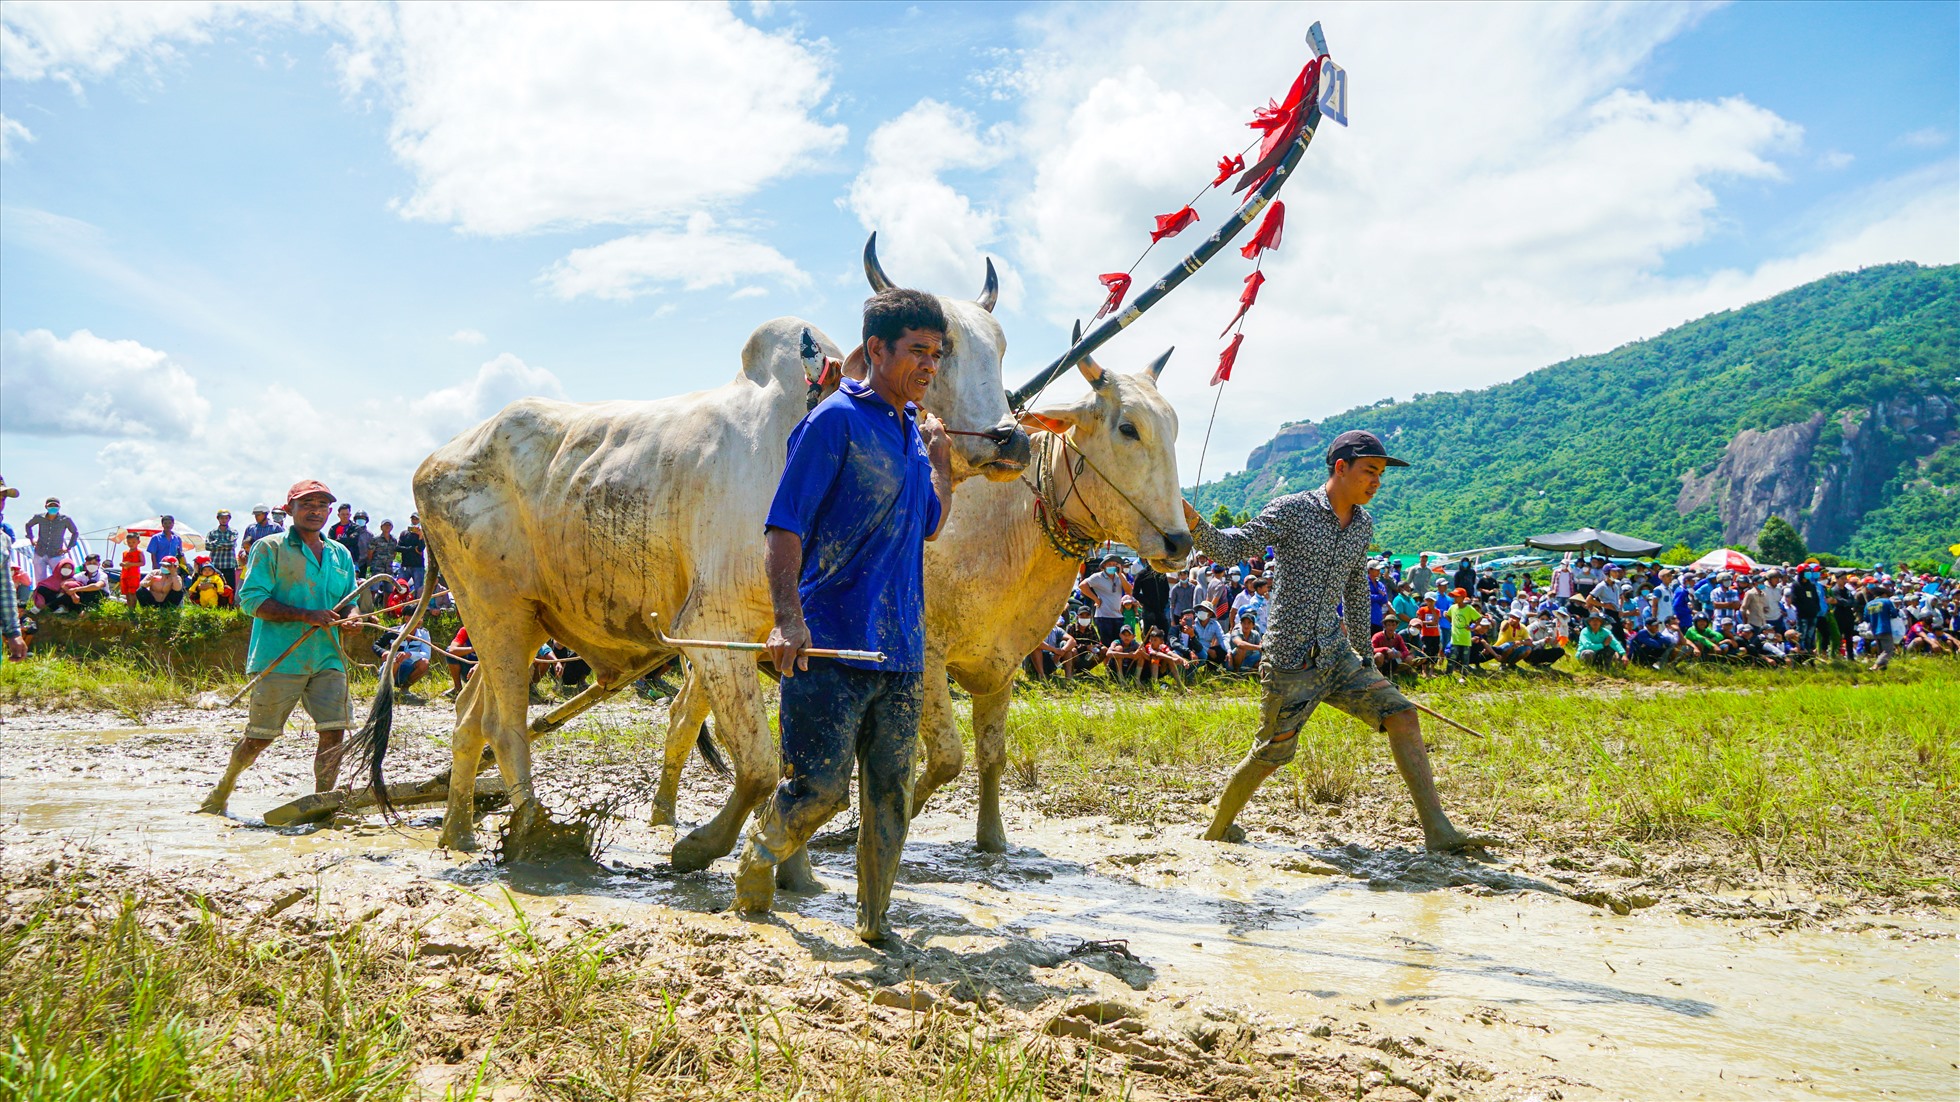 Đây là môn thể thao mang đậm dấu ấn văn hoá Khmer Nam Bộ. Năm 2016, Lễ hội Đua bò Bảy Núi đã được Bộ Văn hóa Thể thao và Du lịch công nhận là di sản văn hoá phi vật thể Quốc gia.